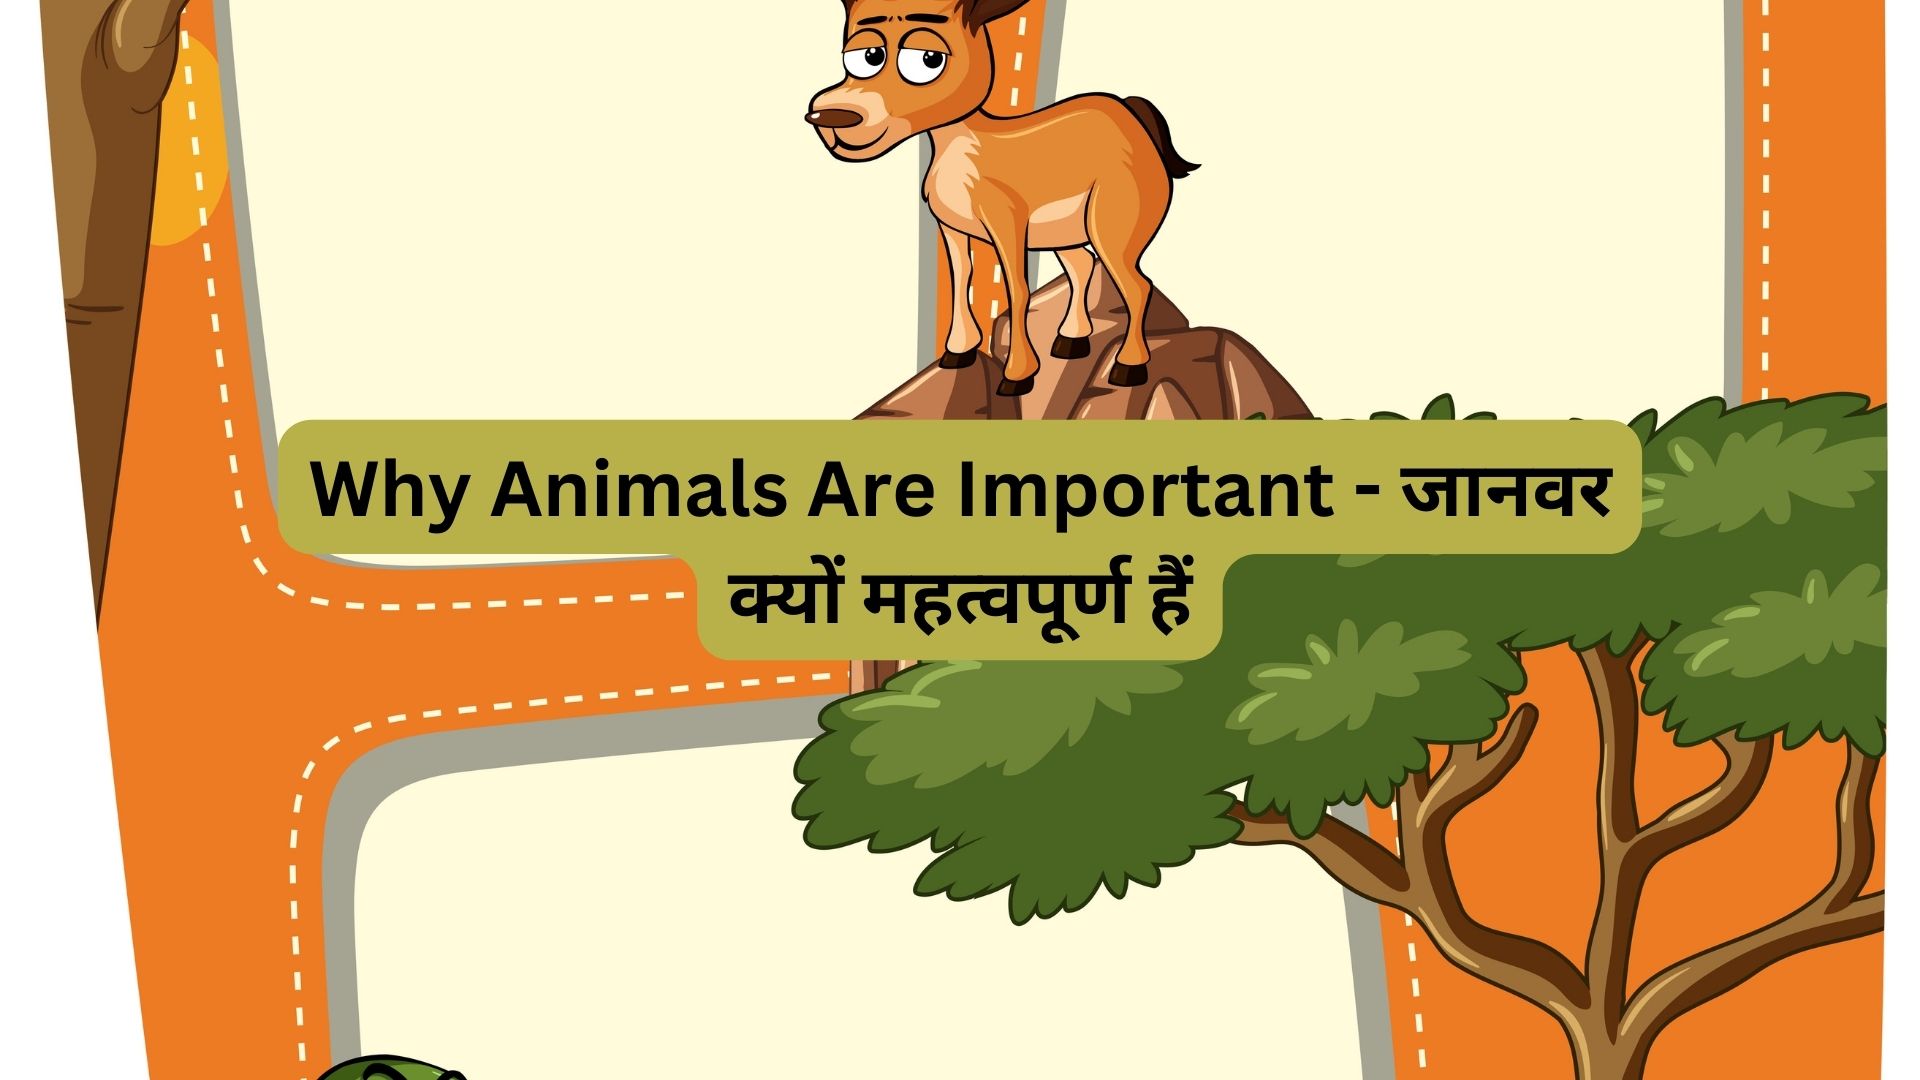 Why Animals Are Important - जानवर क्यों महत्वपूर्ण हैं